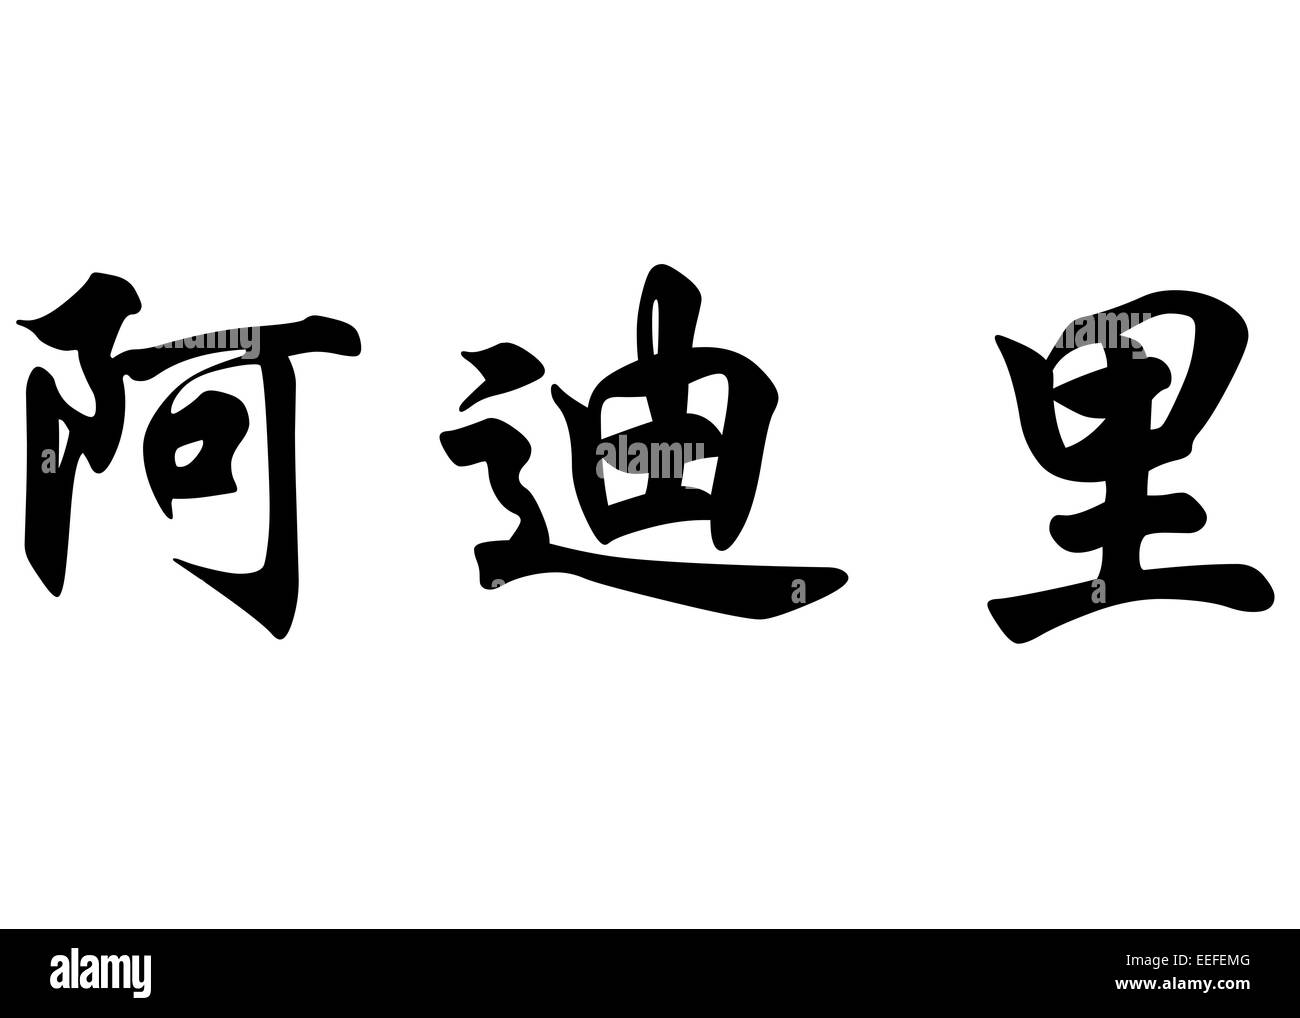 Nom anglais Adli en chinois Calligraphie kanji ou caractères caractères japonais Banque D'Images